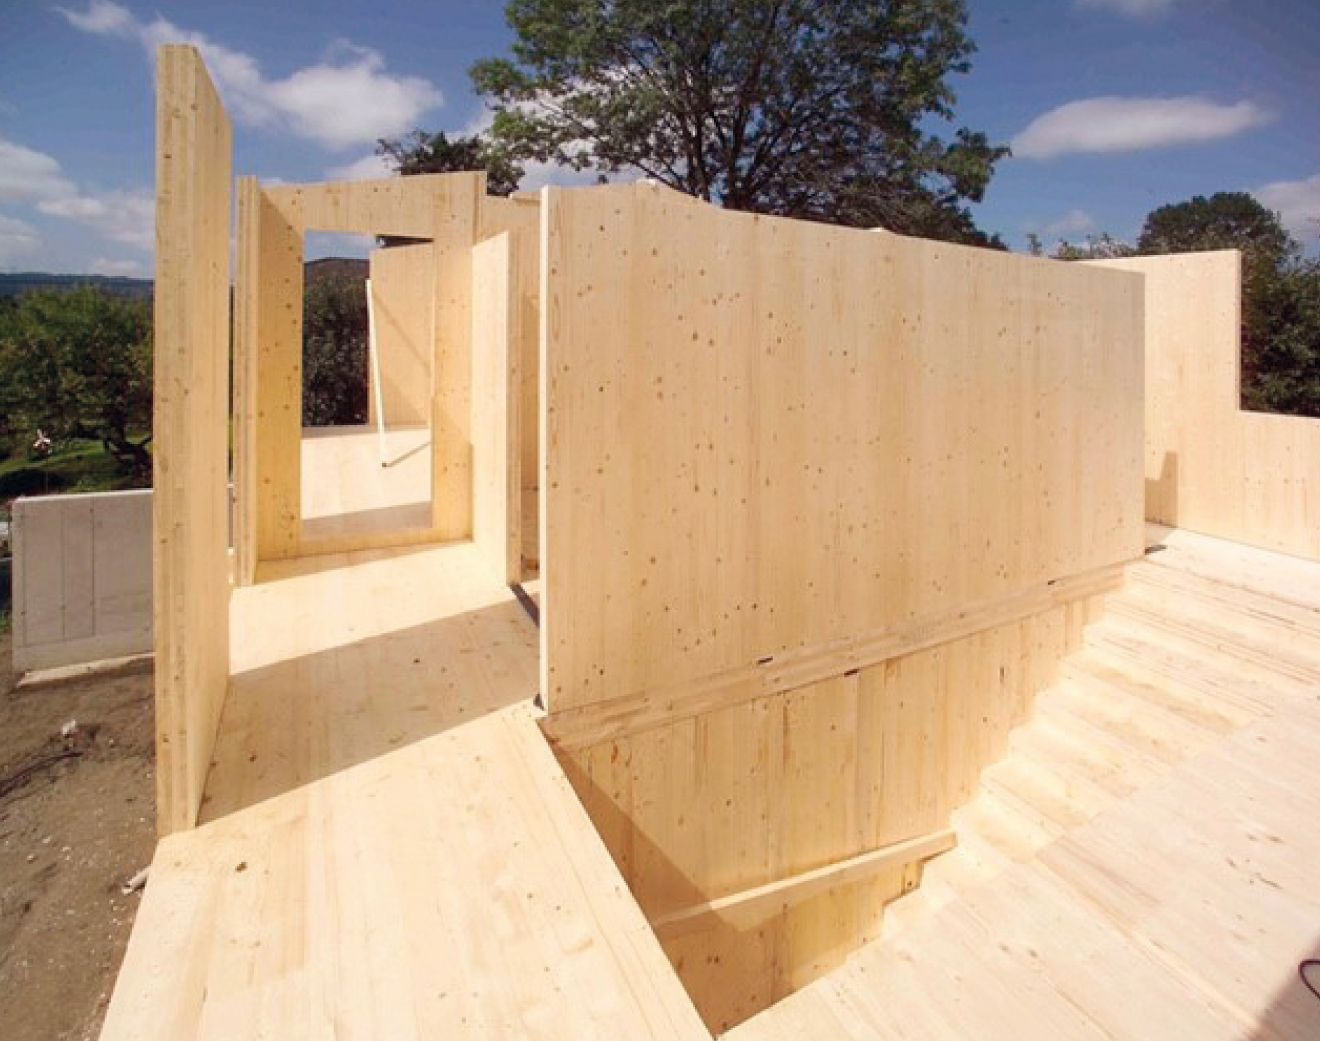 Els habitatges es construeixen amb fusta contralaminada.